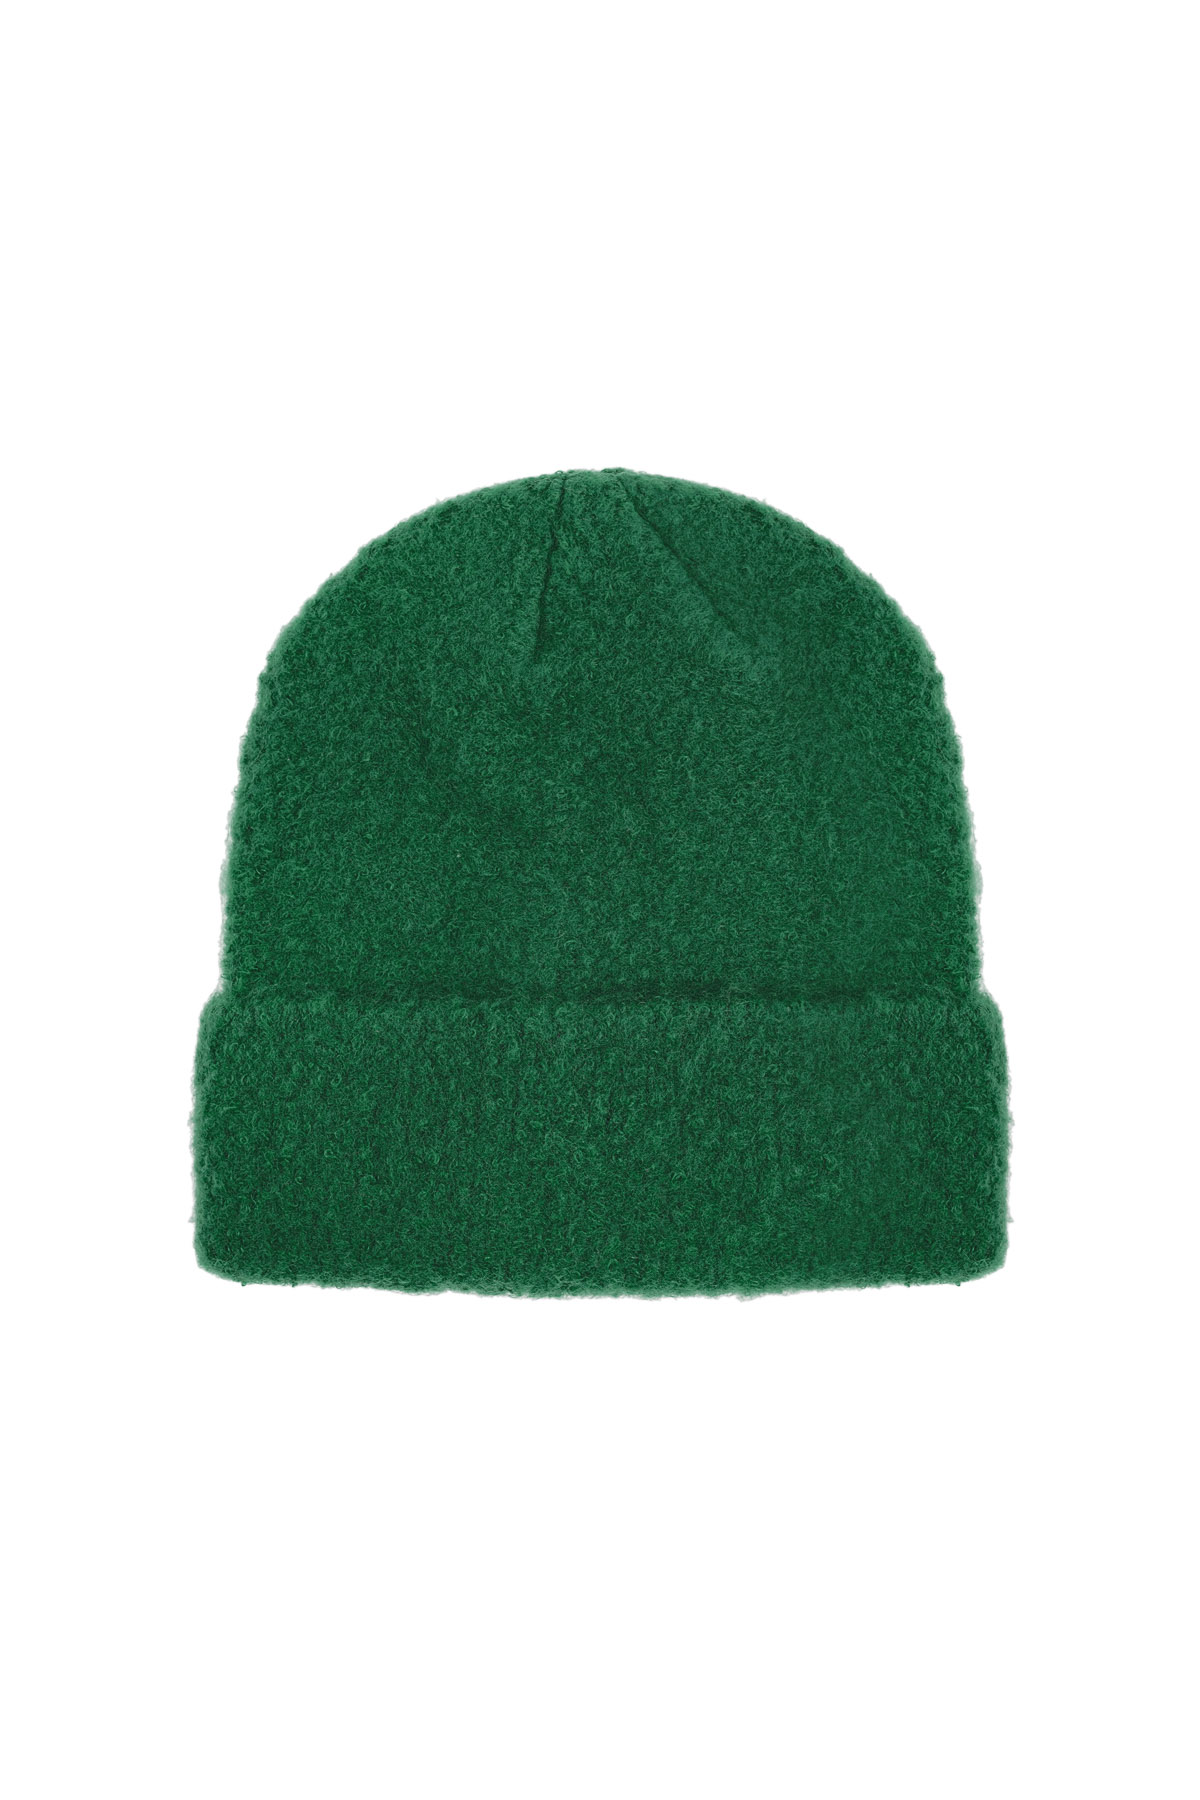 Basic-Mütze - dunkelgrün h5 